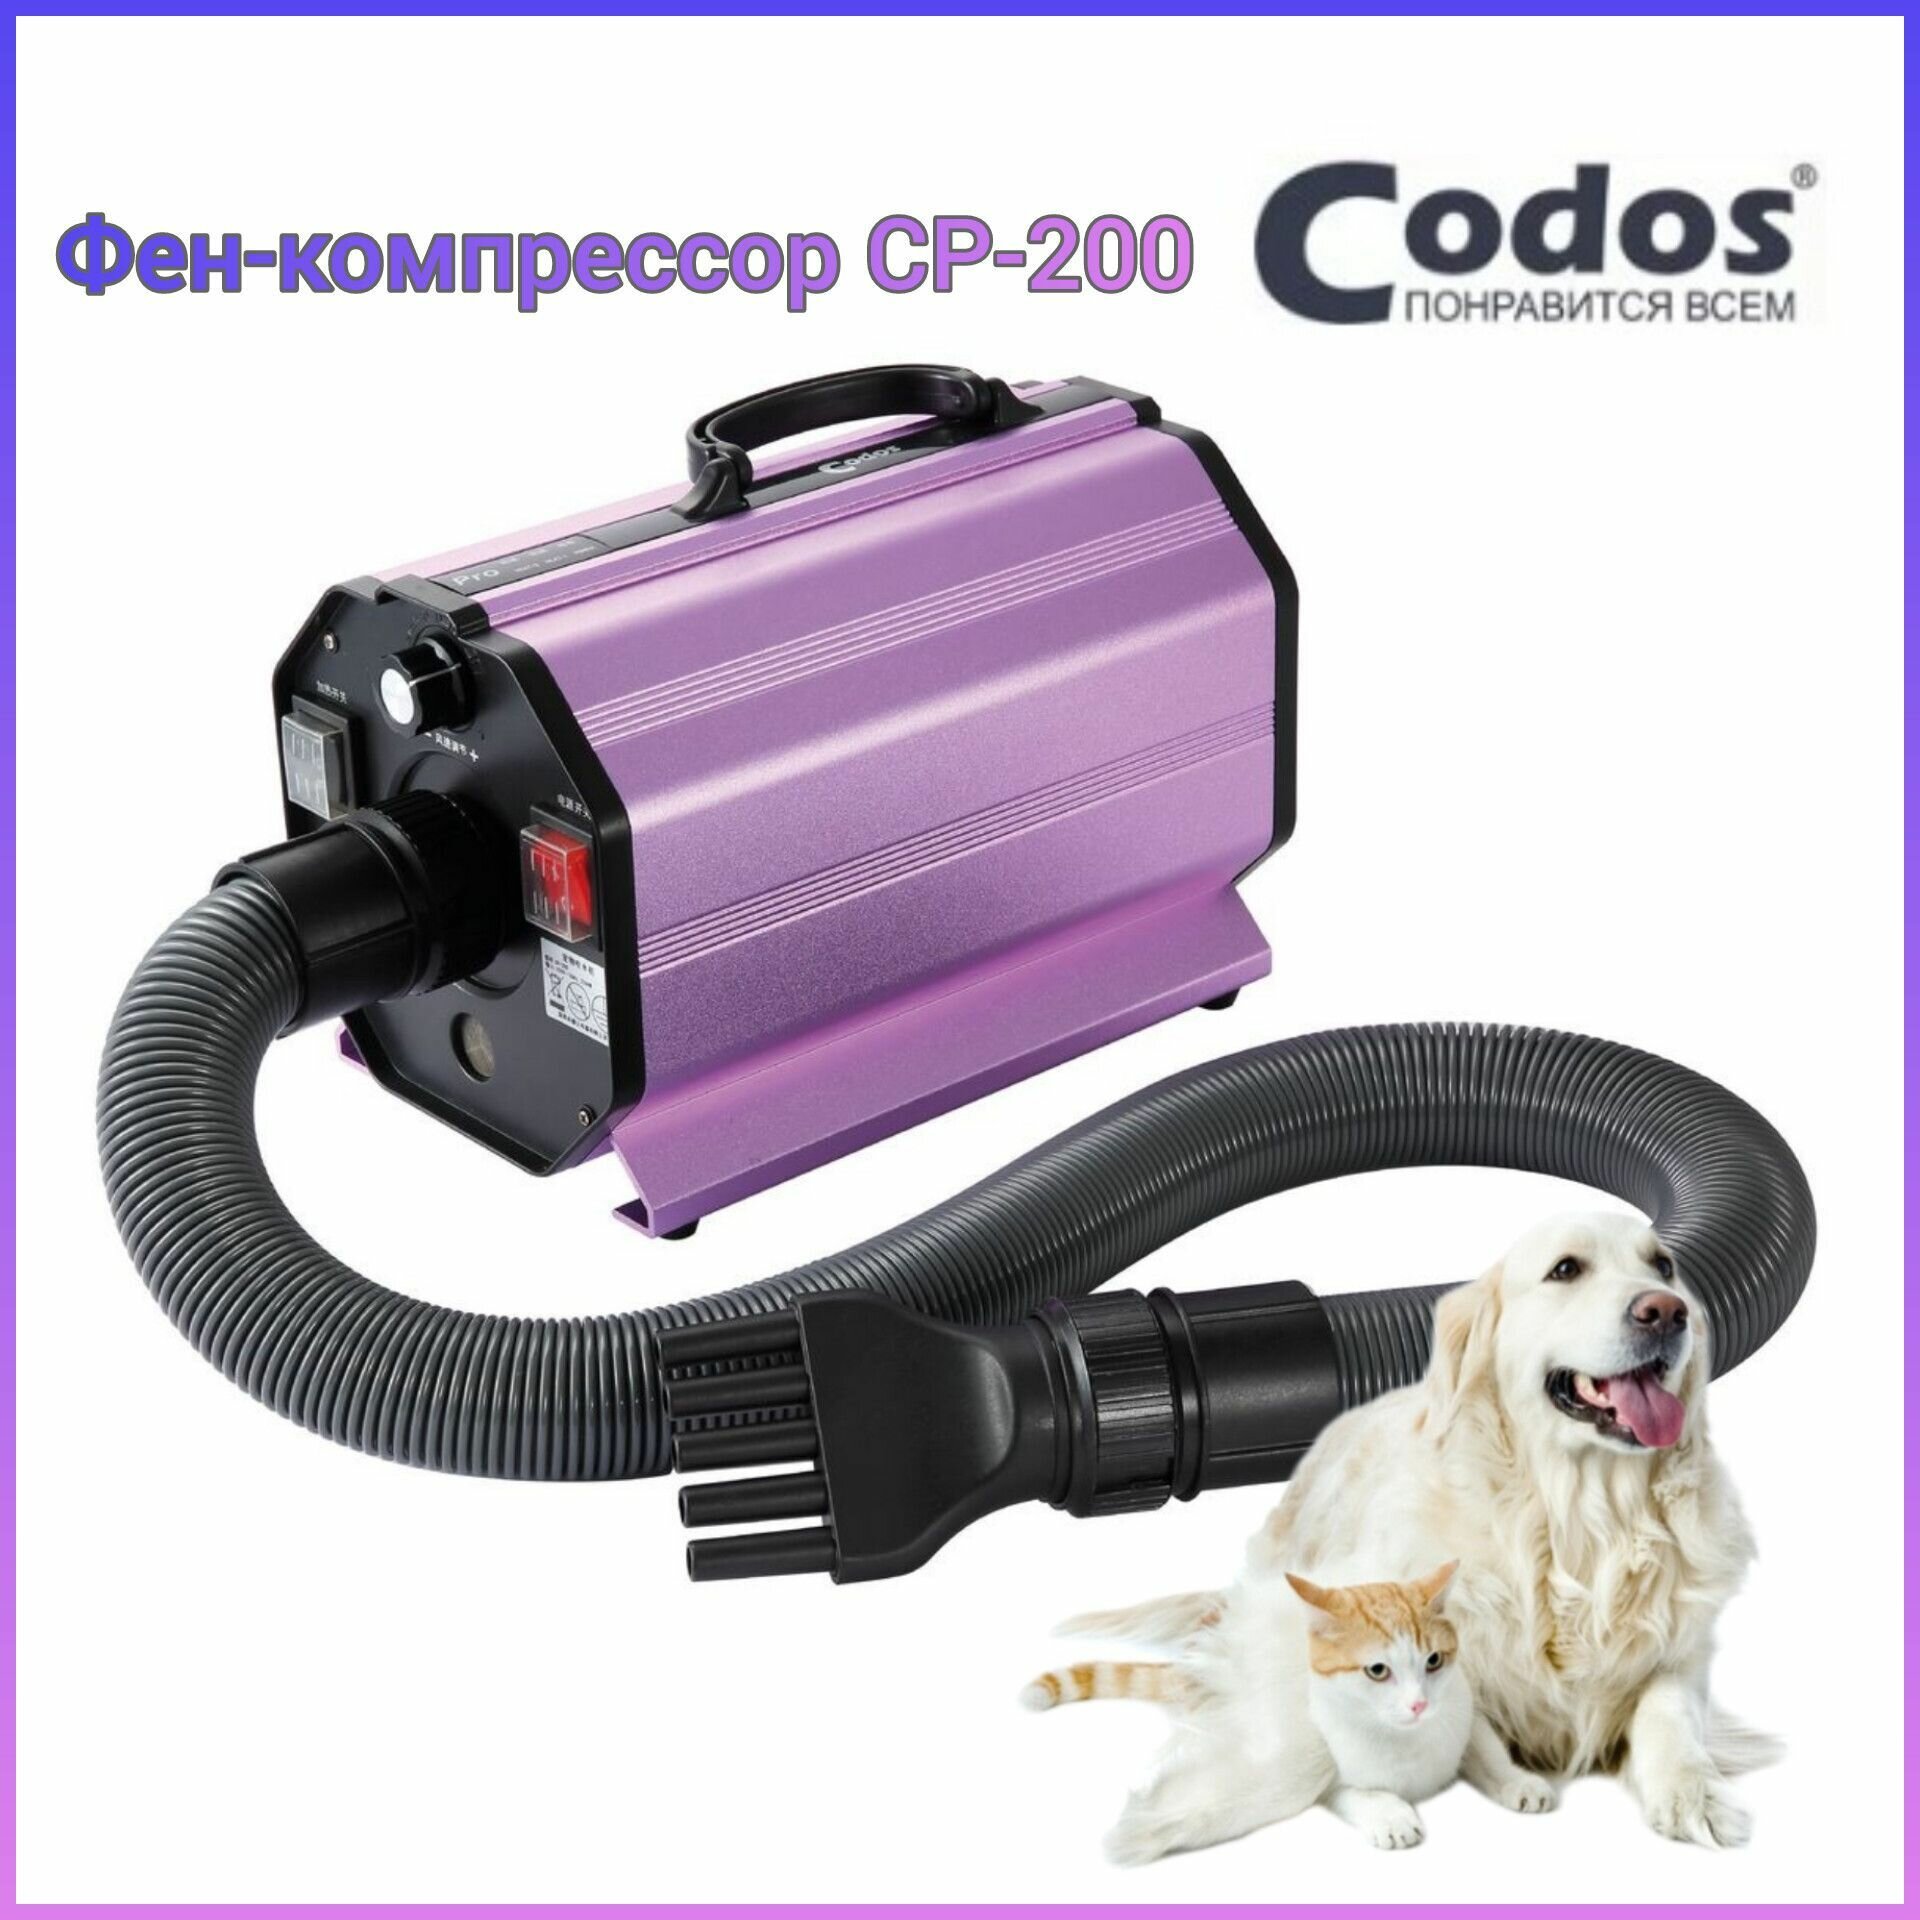 Фен-компрессор Codos CP-200 для сушки собак и кошек